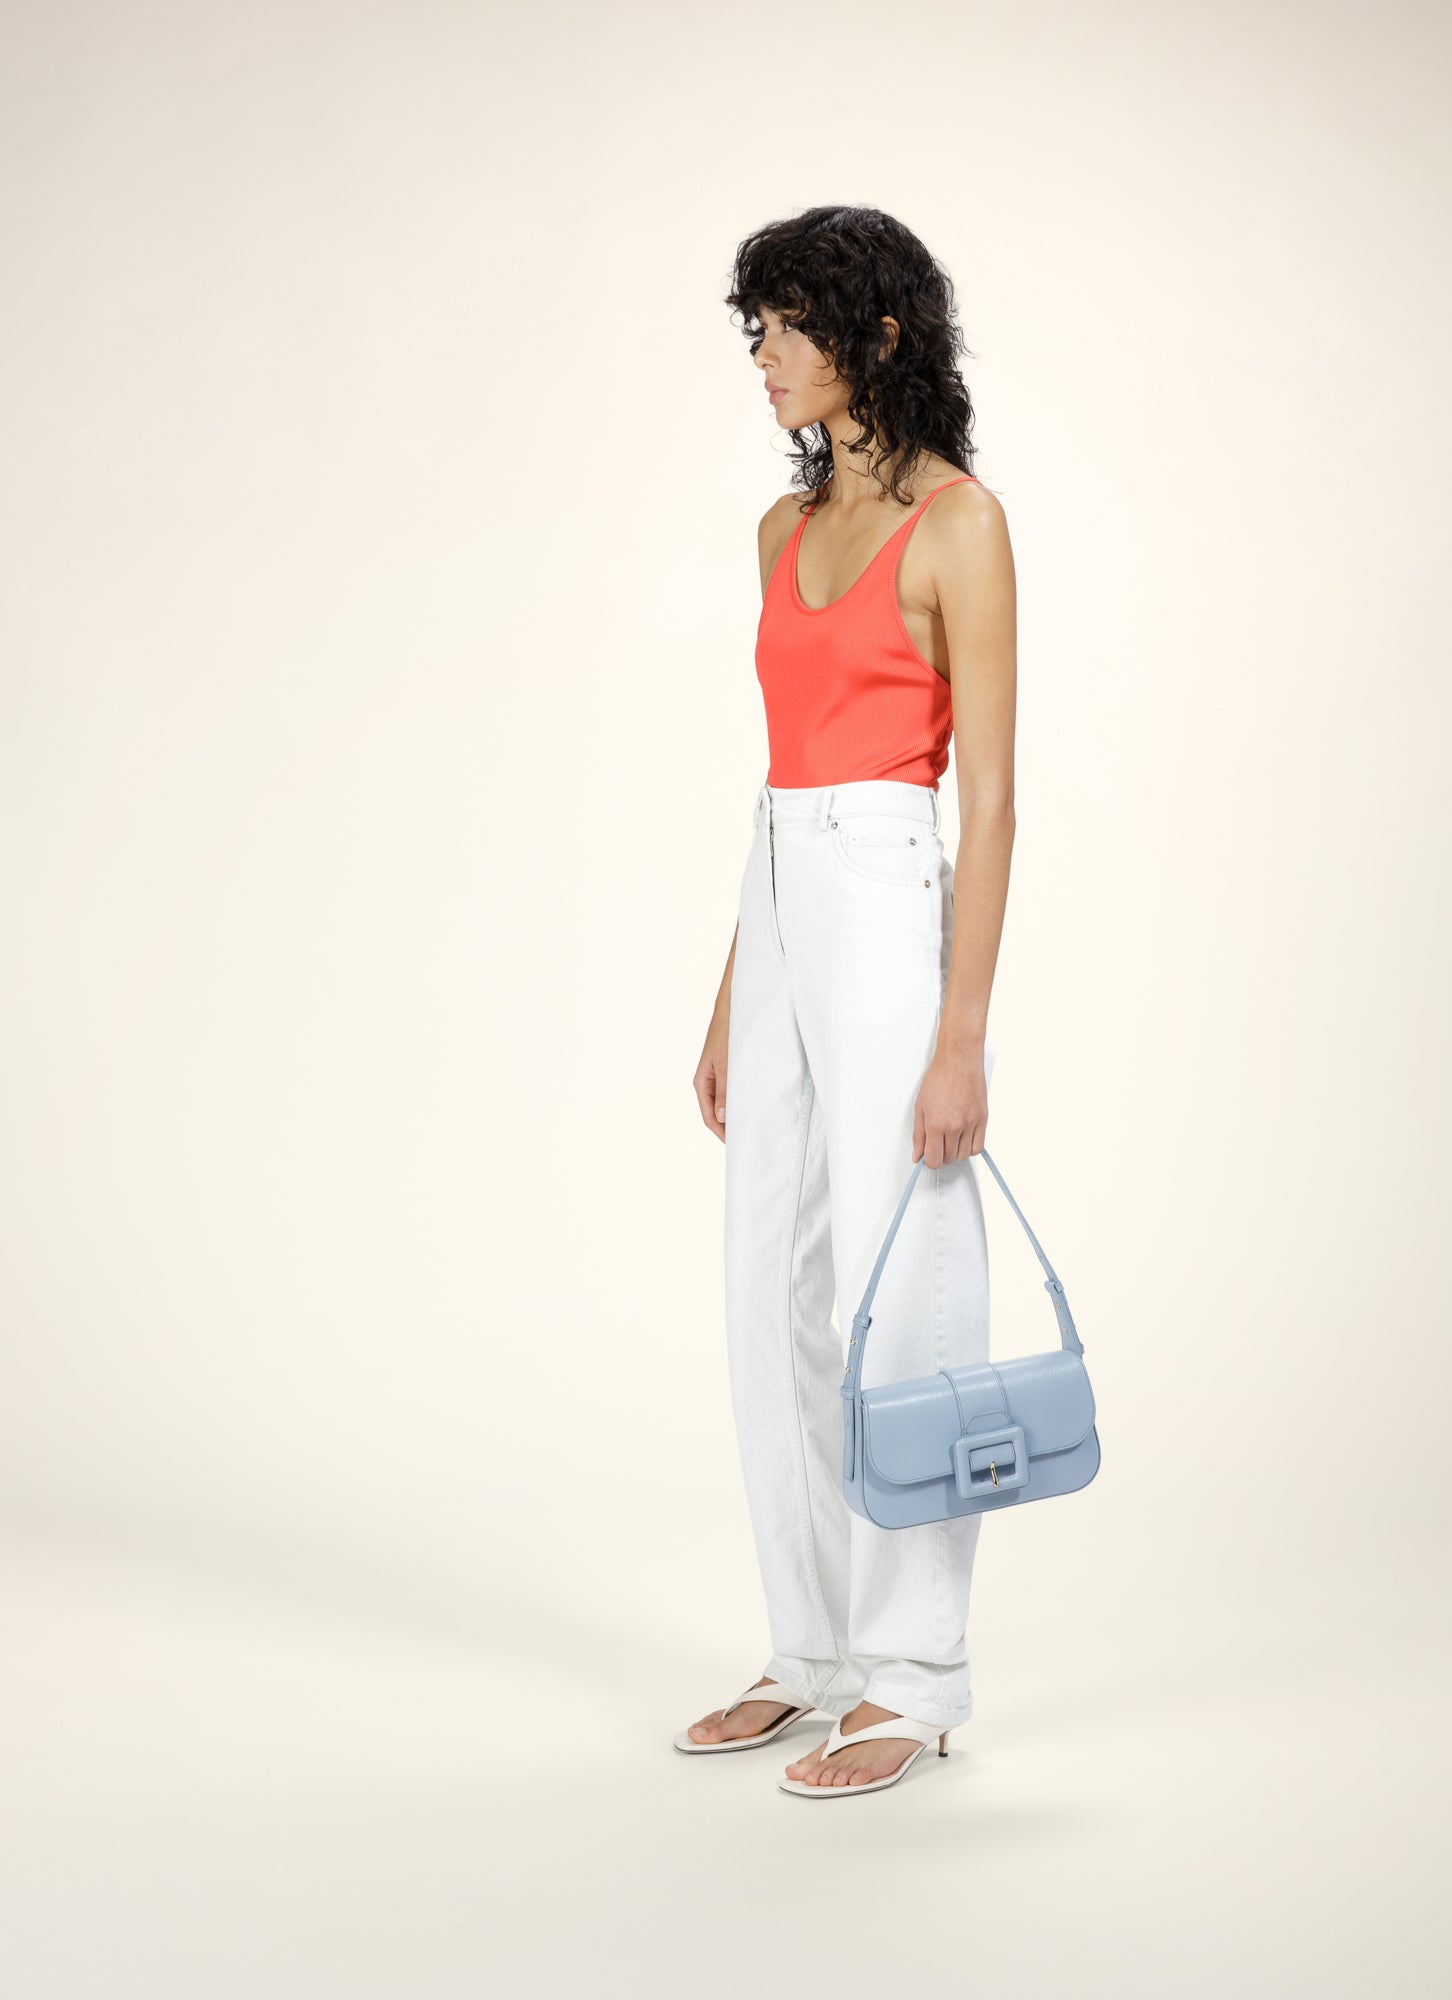 Buy Lavie Hand Bag With Mini Bag - Brown Online in United Arab